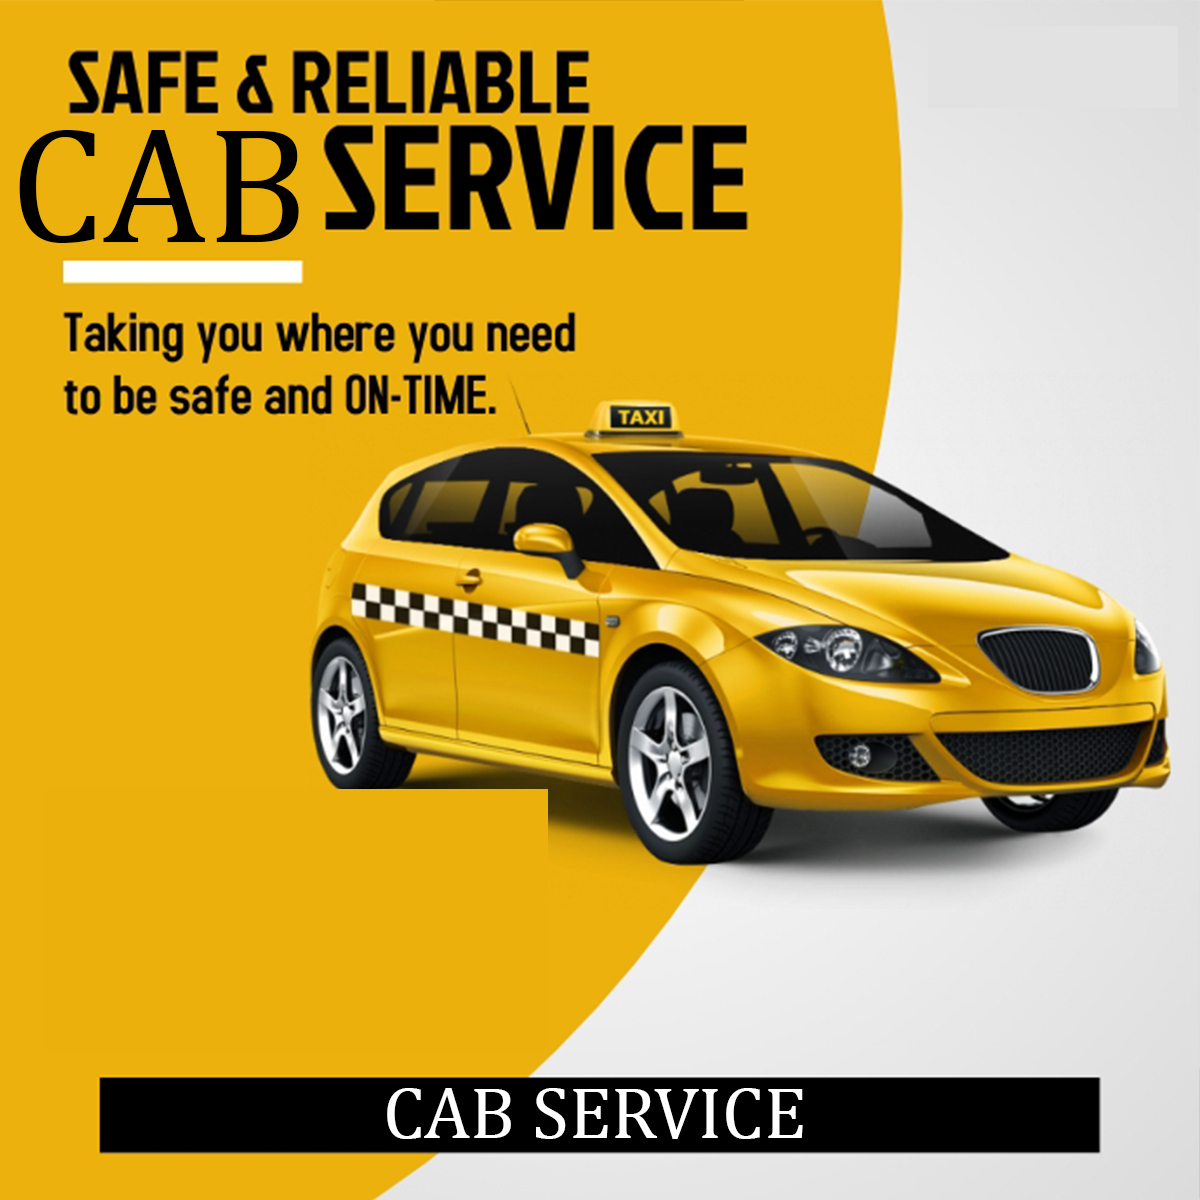 Cab Services In Vikaspuri